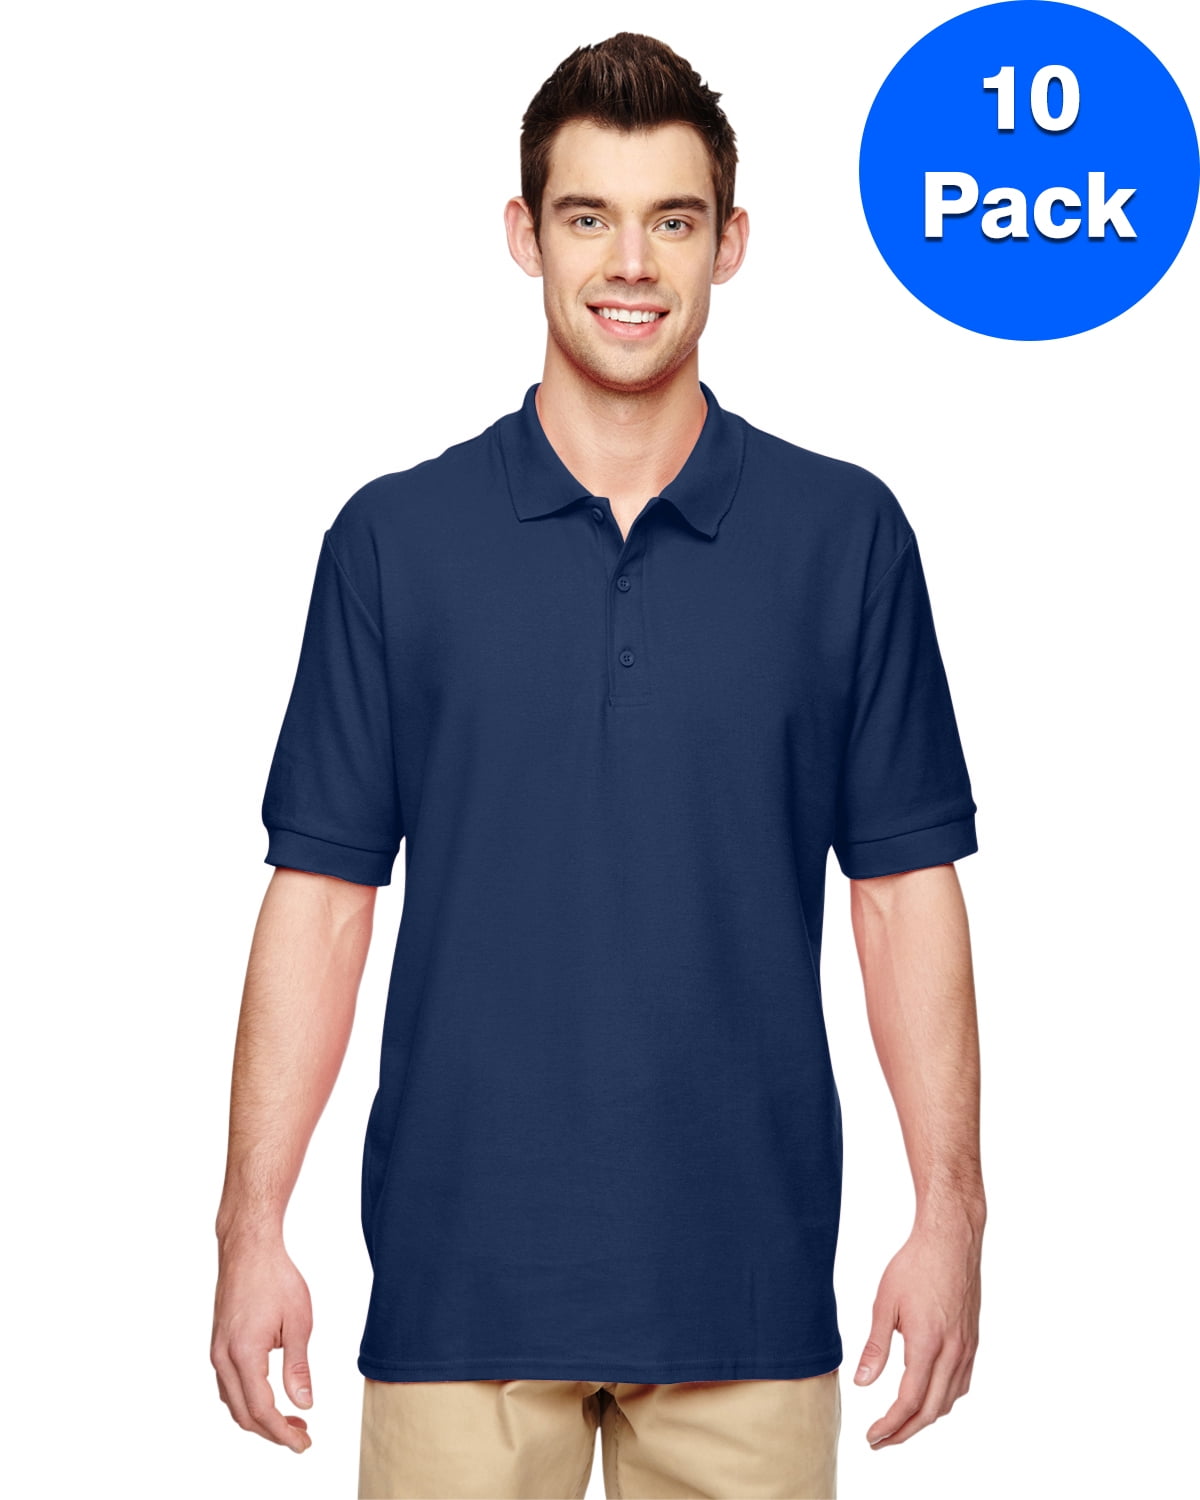 Mens Premium Cotton Double Piqué Sport Shirt 10 Pack - Walmart.com